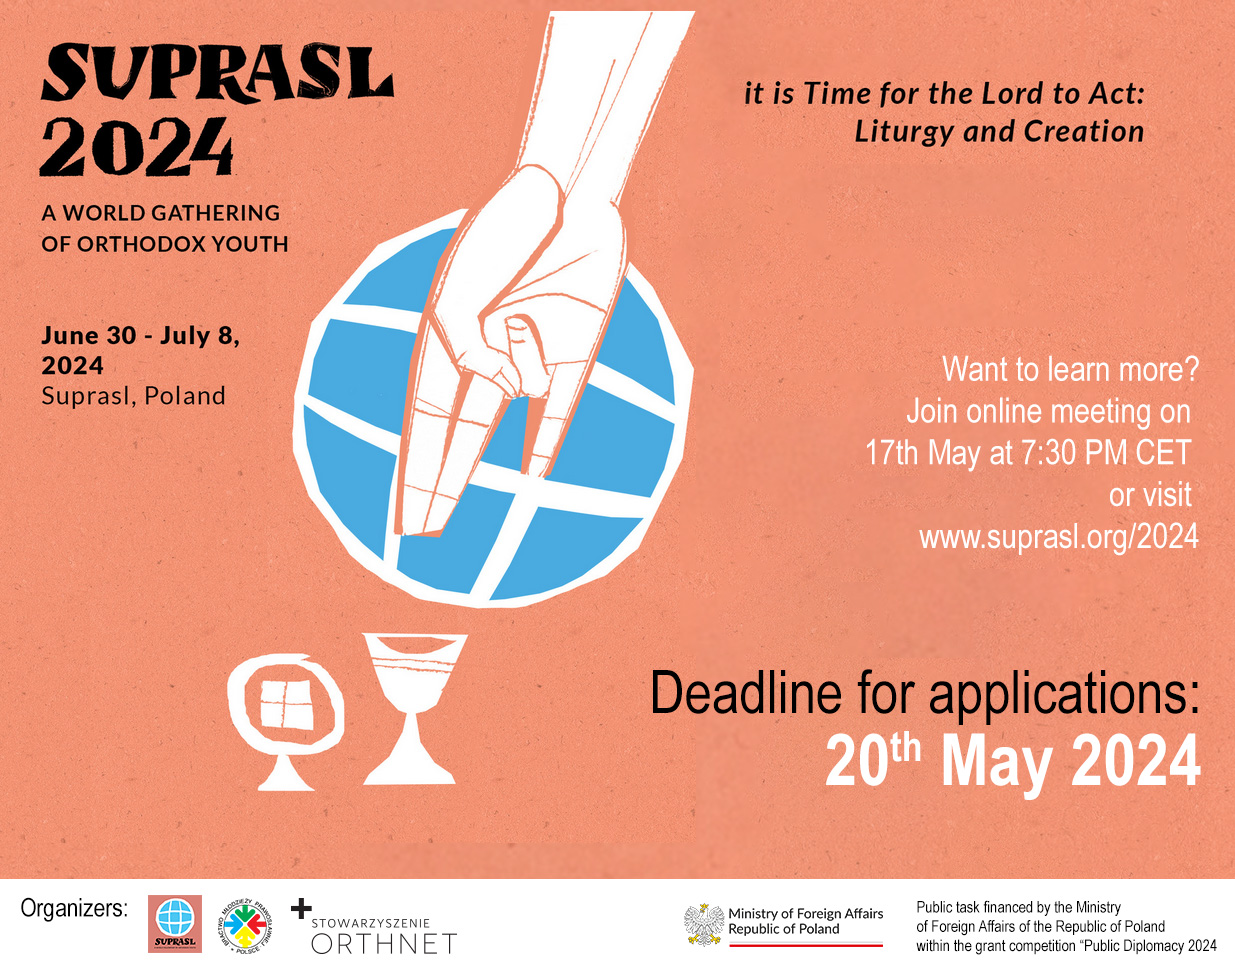 Suprasl 2024 - International Gathering of Orthodox Youth